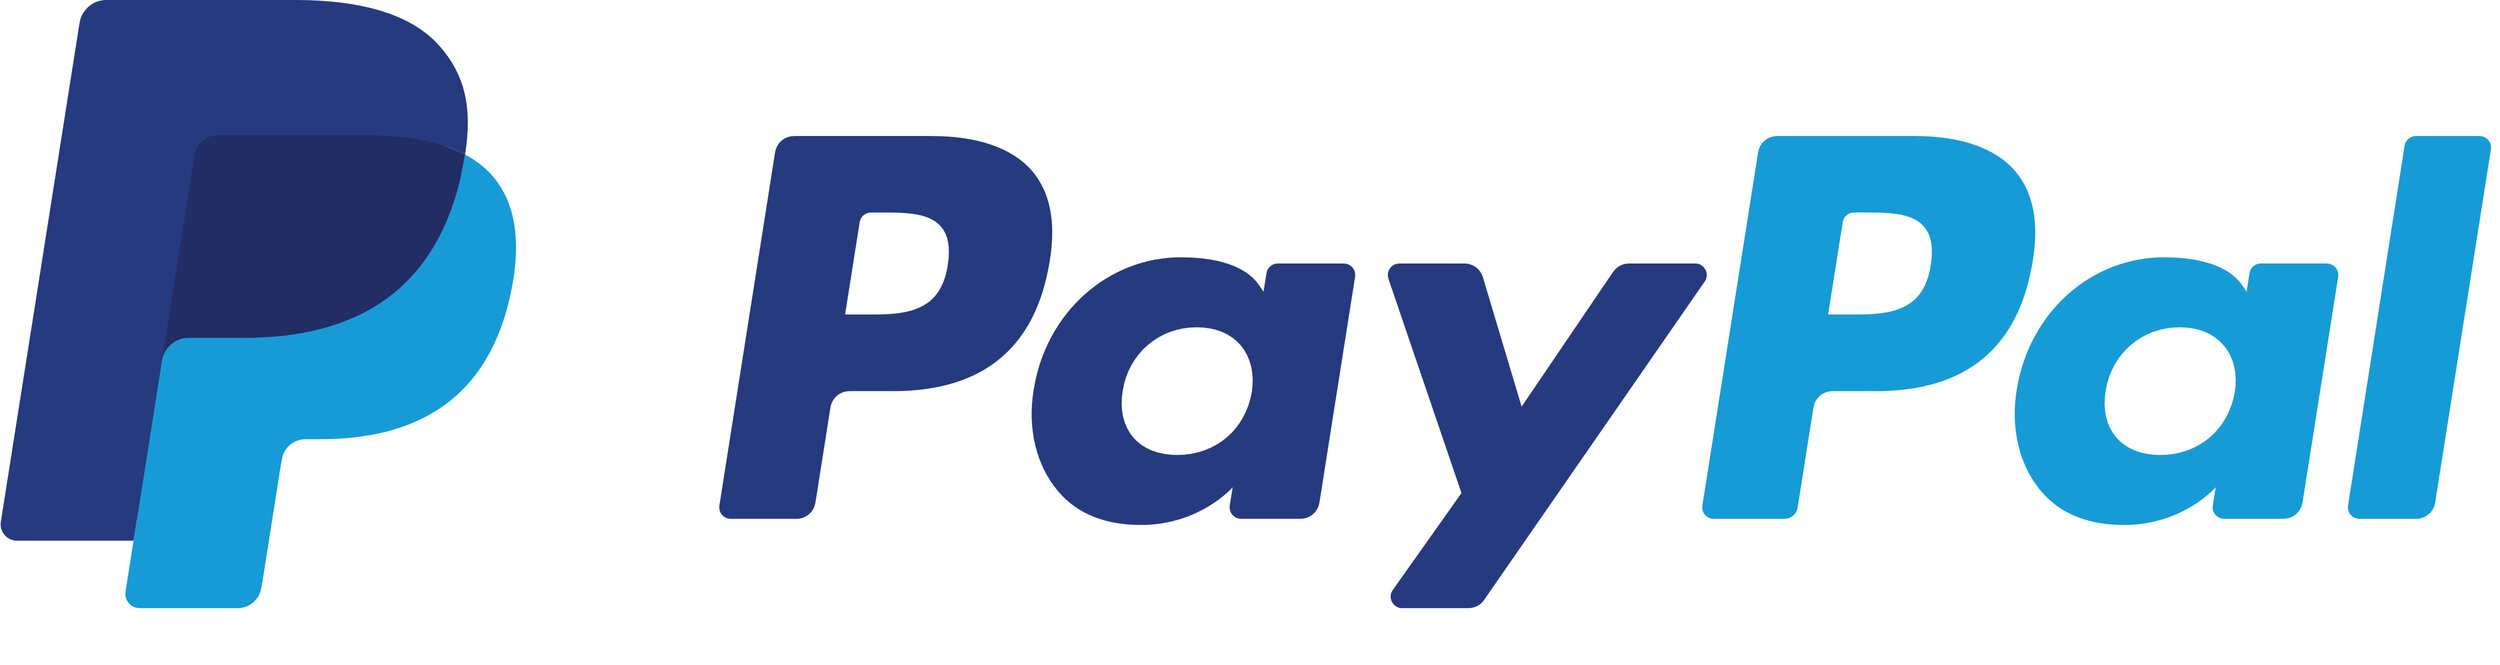 PayPal_logo_logotype_emblem.jpg